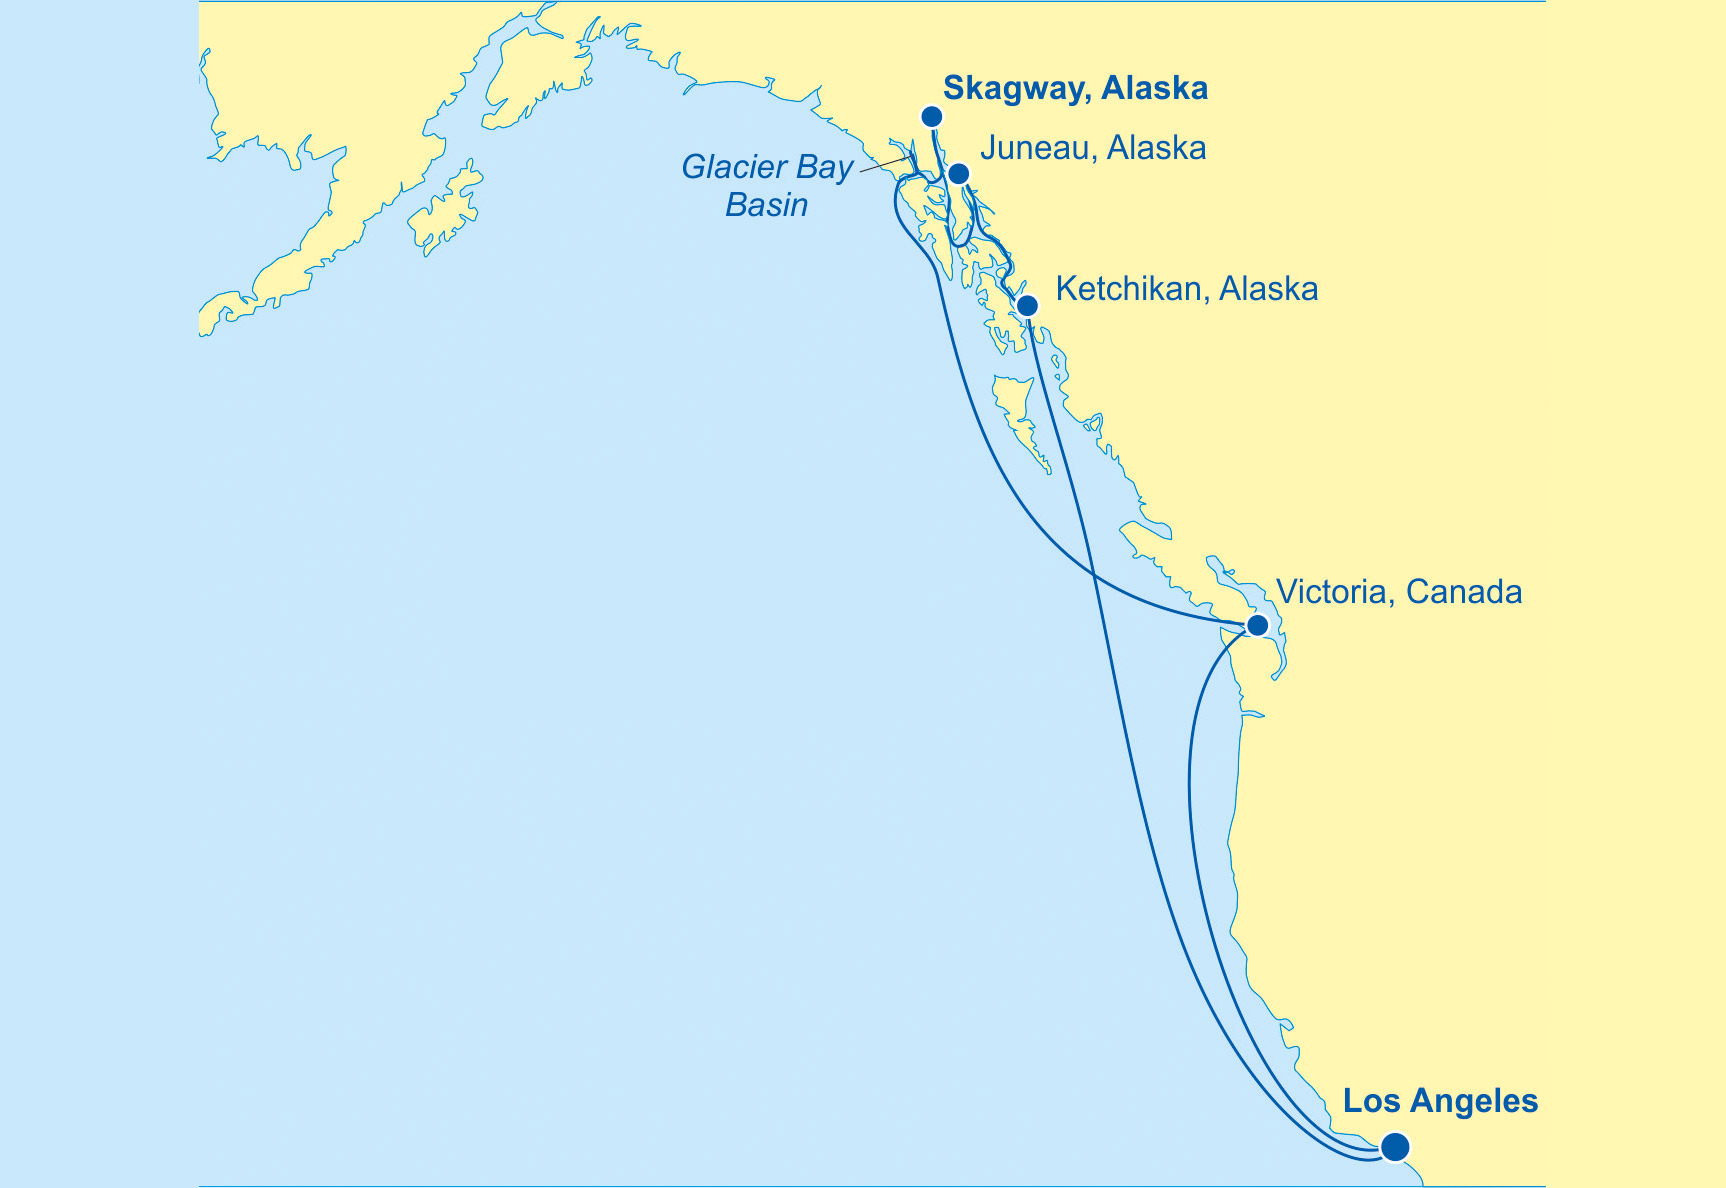 Star Princess Alaska (Glacier Bay) - Cruises.com.au